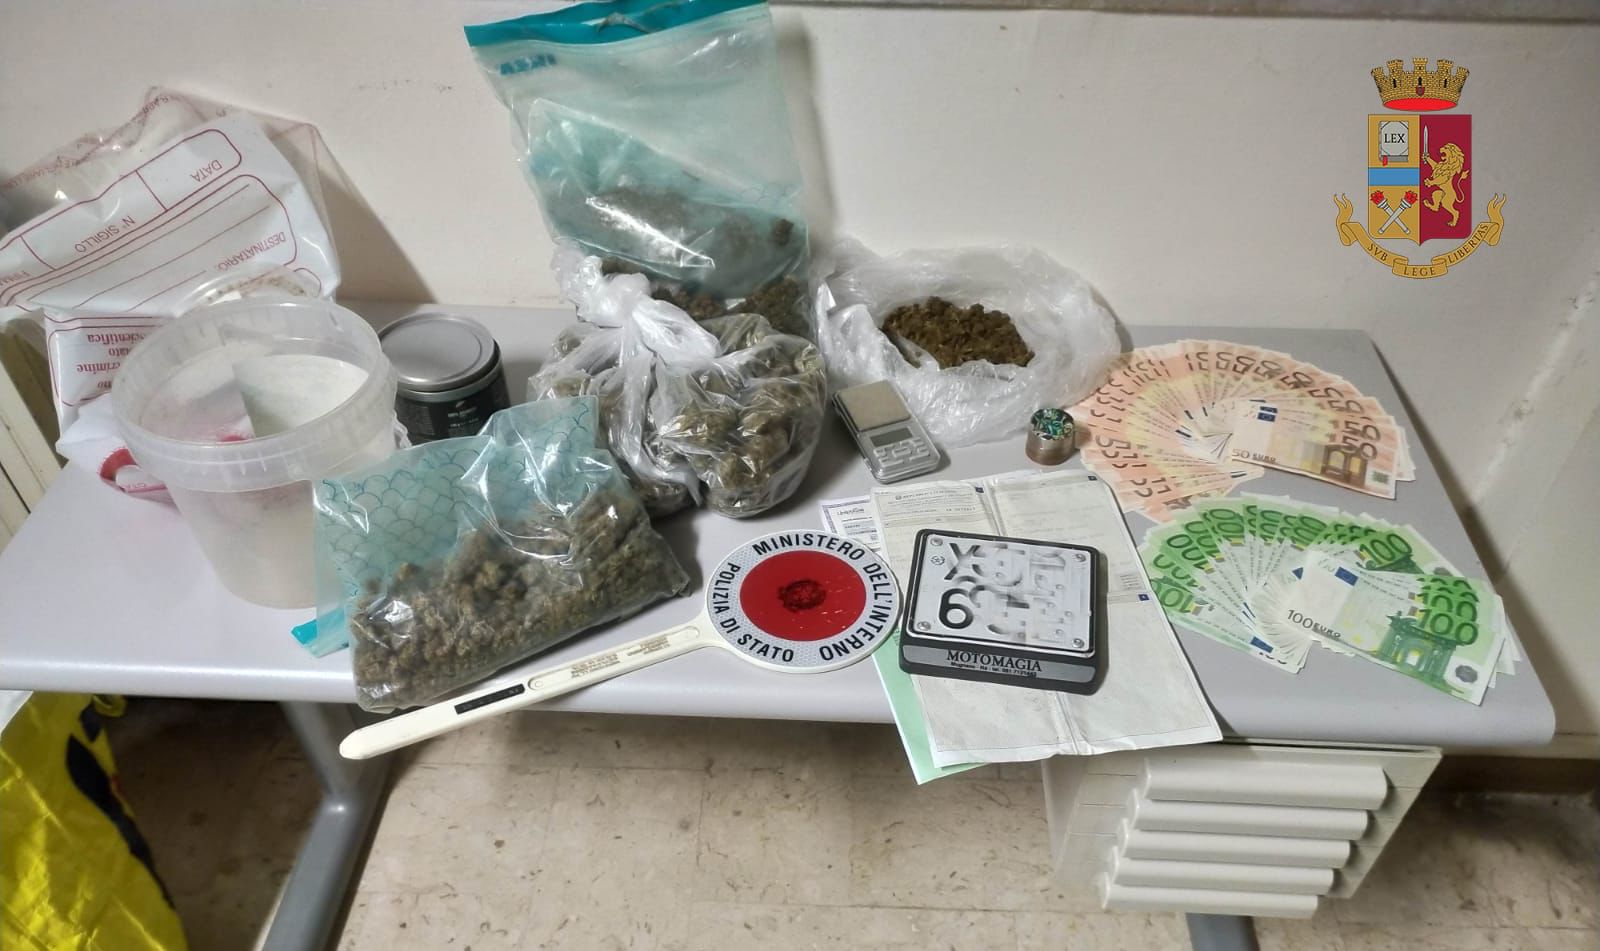 Nascondeva in casa 1 kg di marijuana e 2.900 euro di banconote false, arrestato 56enne: operazione del commissariato di polizia di Cervinara